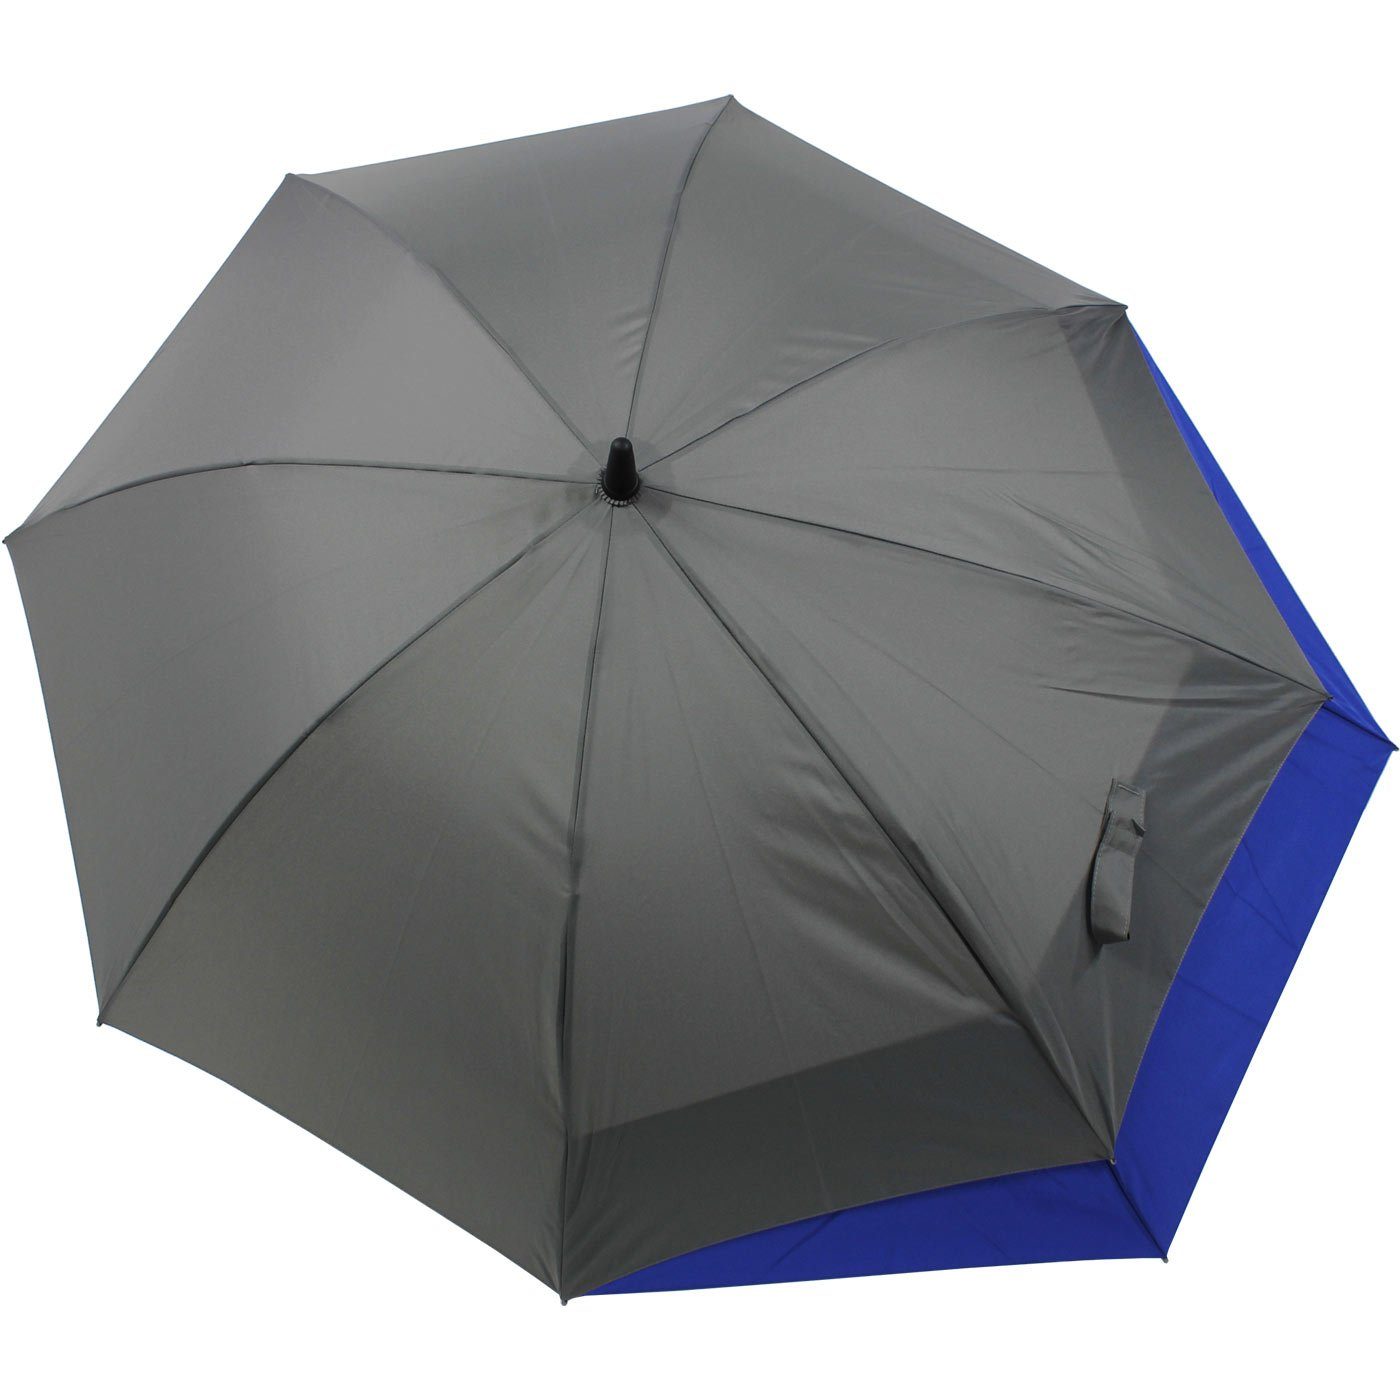 Regen doppler® Move vergrößert sich Schutz vor - Langregenschirm Auf-Automatik für XL, grau-blau to Öffnen beim mit mehr Fiberglas